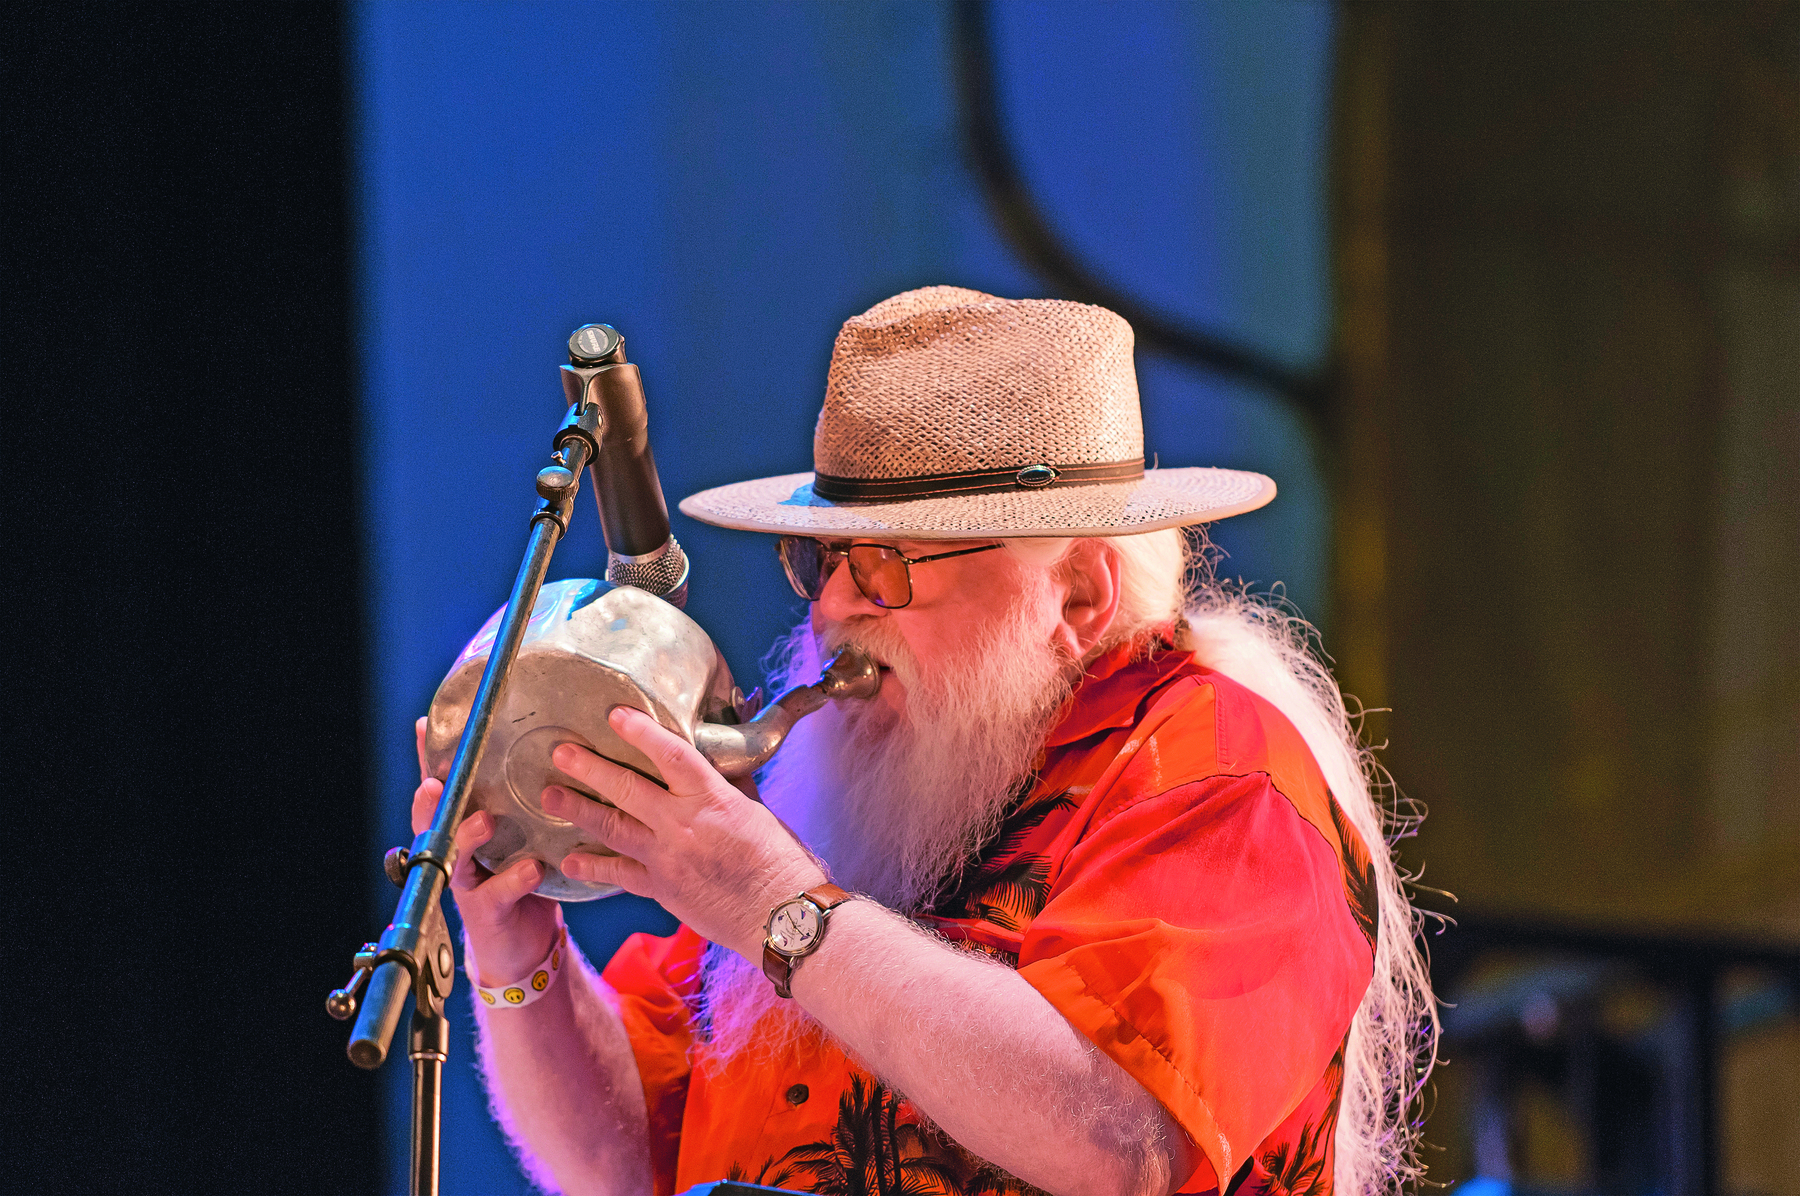 Fotografia. Homem de cabelo e barba longos e grisalhos, com chapéu de palha, vestido com uma camisa laranja, toca um instrumento de metal em formato de chaleira diante de um microfone.